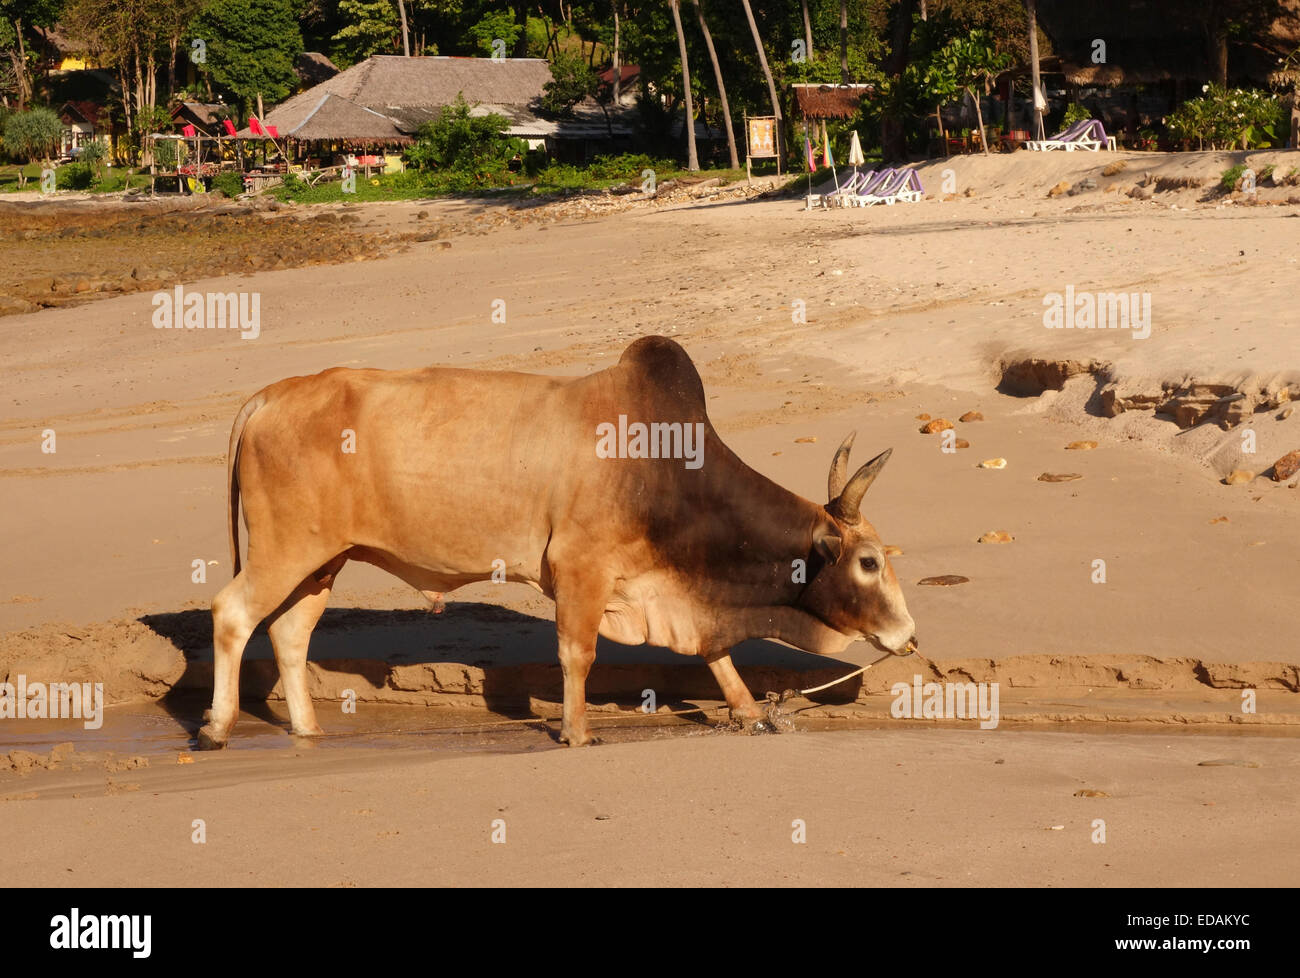 Bull di Asian razza bovina sulla spiaggia. Resort in background. Koh Ko Lanta, Thailandia del sud-est asiatico. Foto Stock